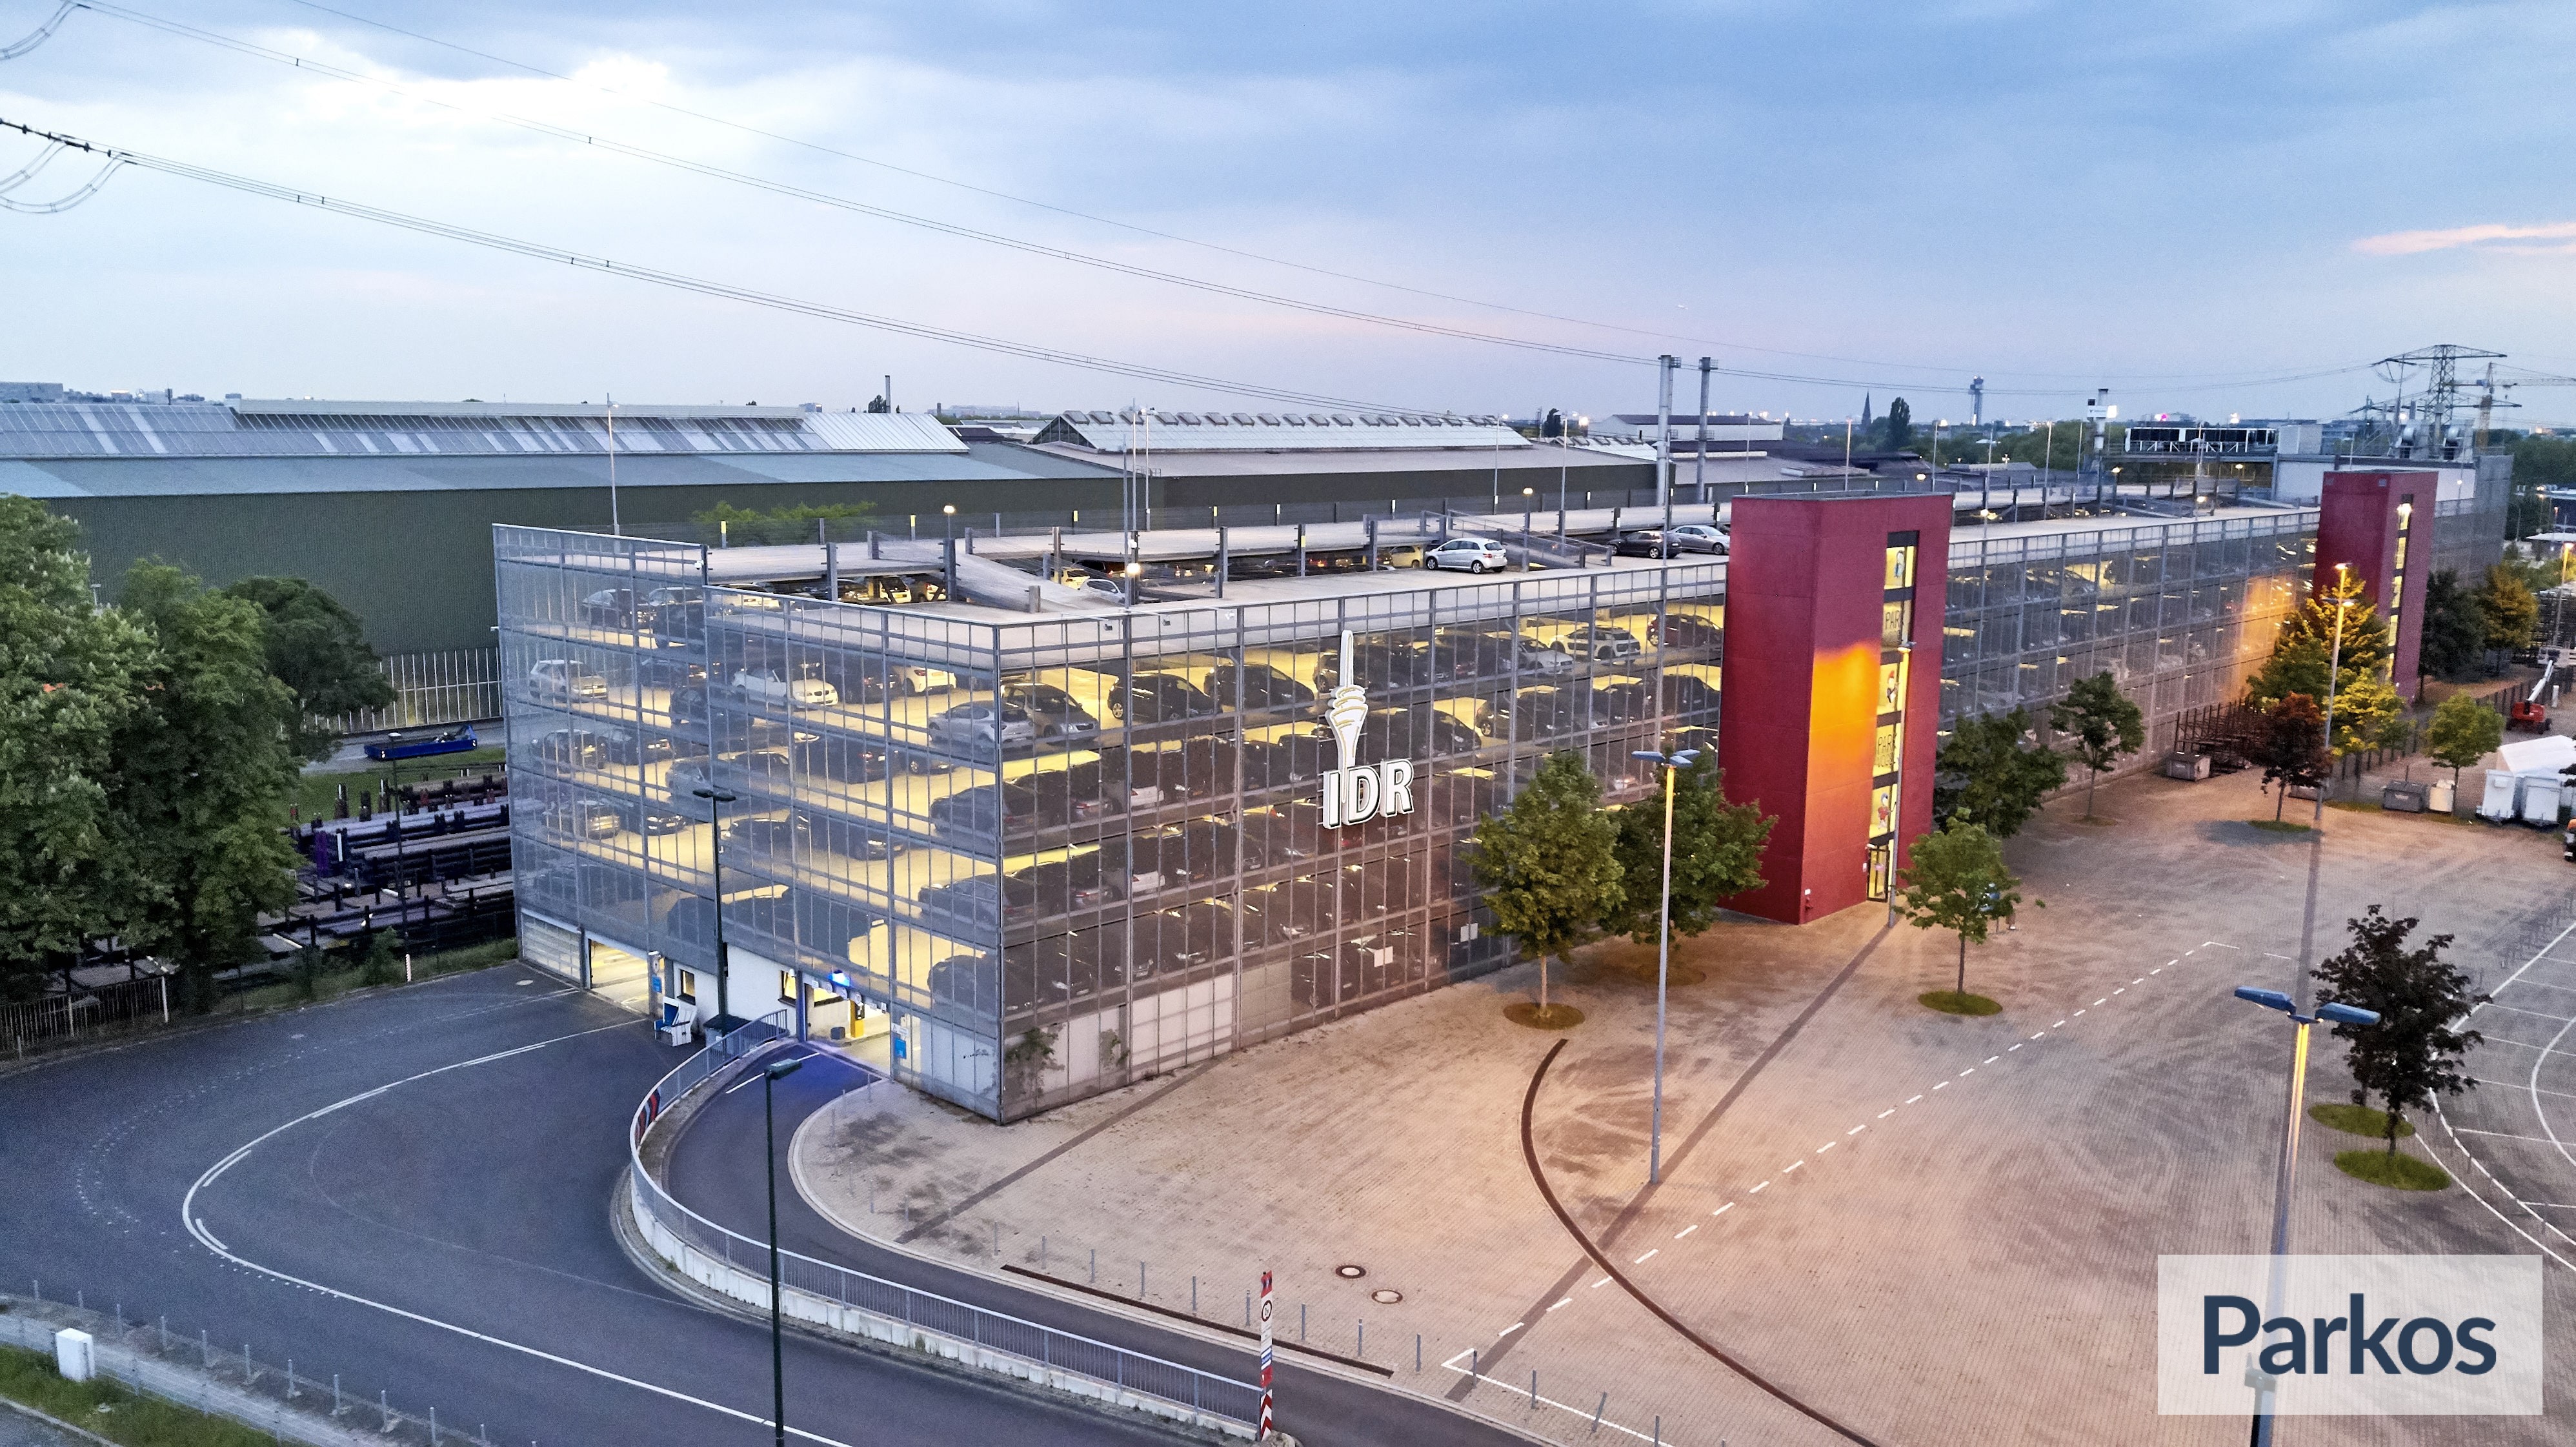 PSD BANK DOME Düsseldorf - Parken Flughafen Düsseldorf - picture 1